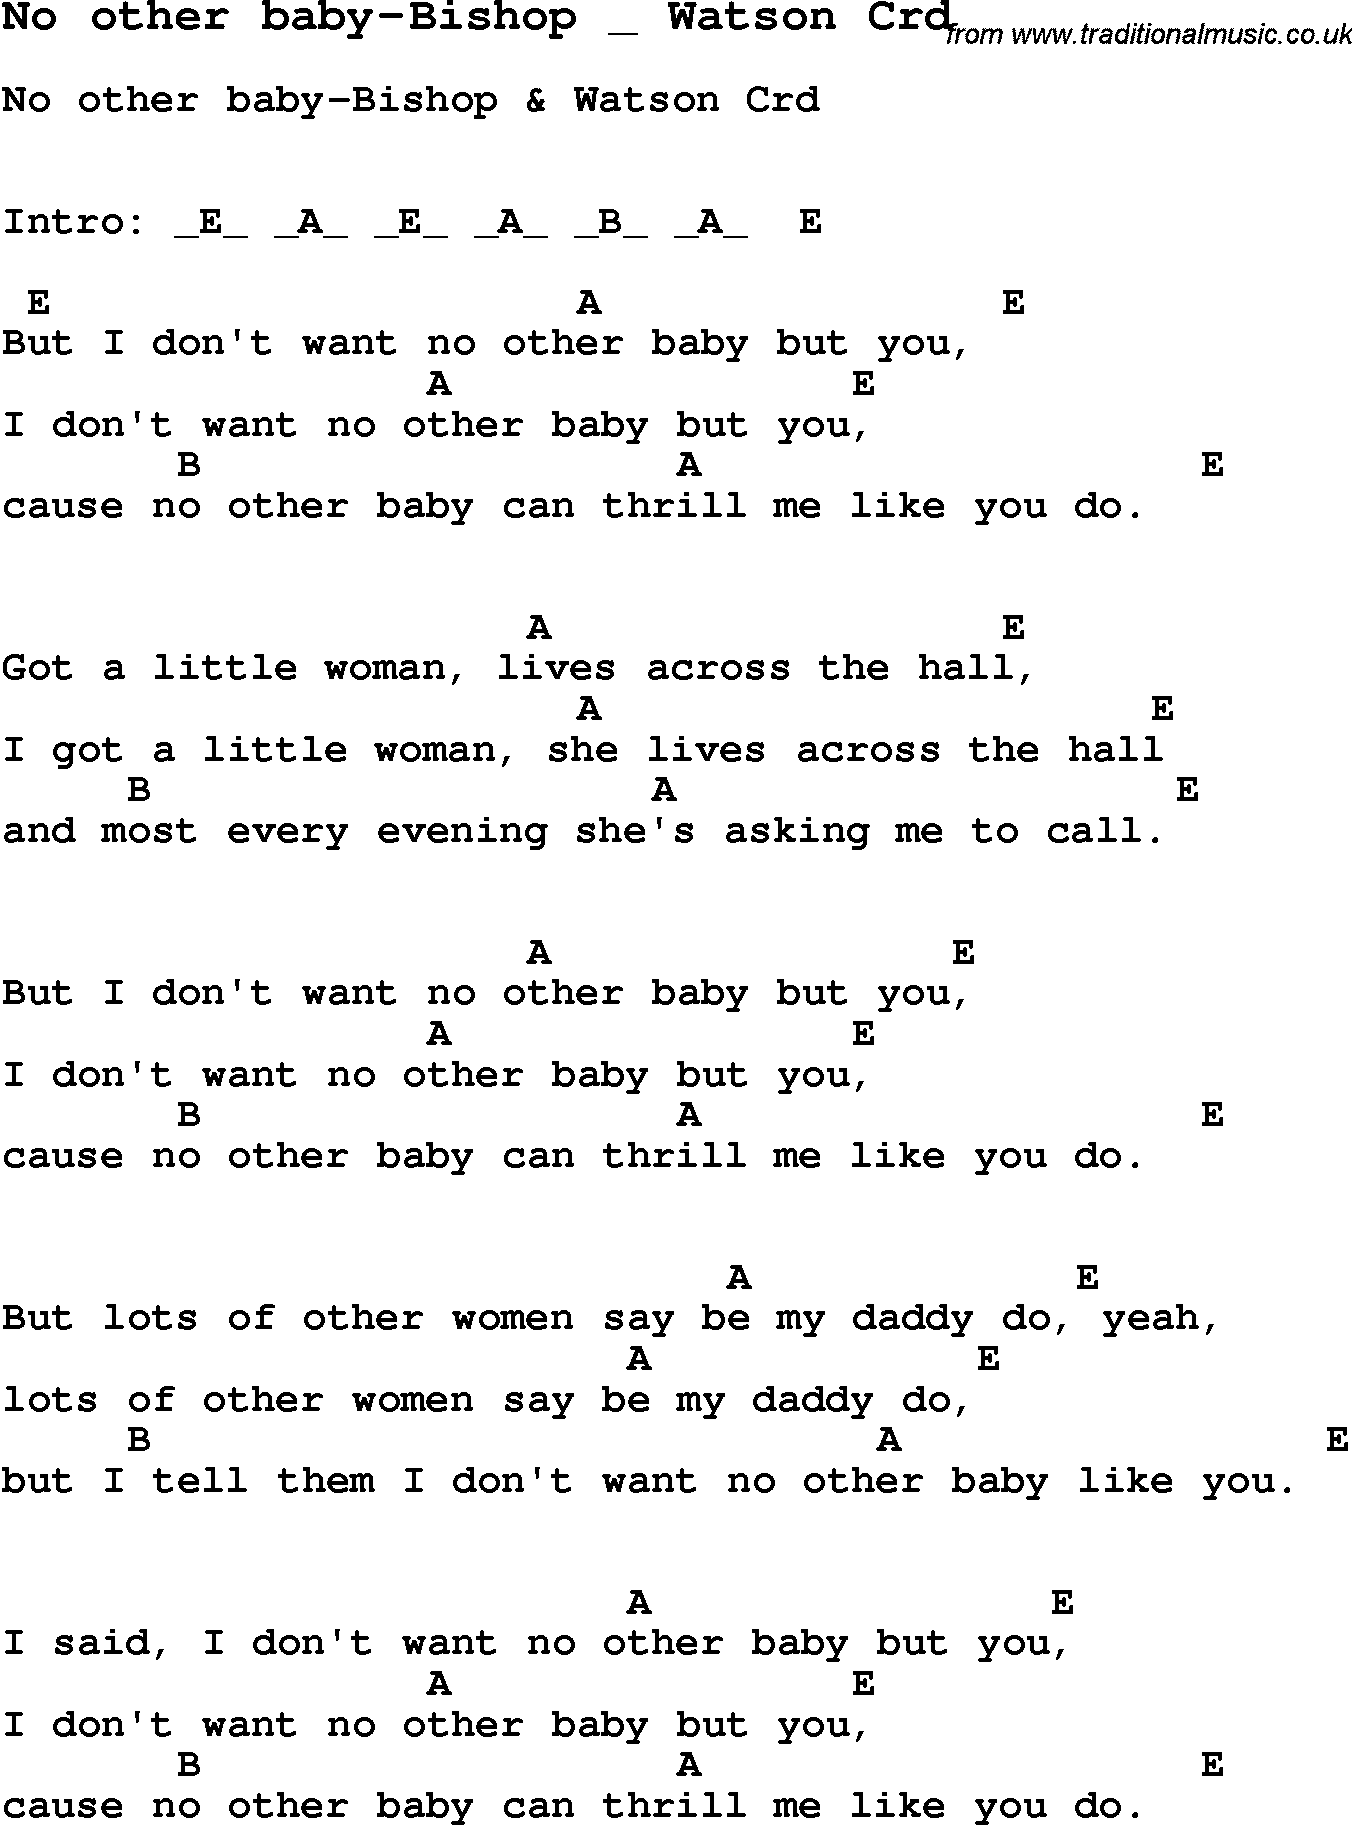 Skiffle Song Lyrics for No Other Baby-Bishop Watson with chords for Mandolin, Ukulele, Guitar, Banjo etc.